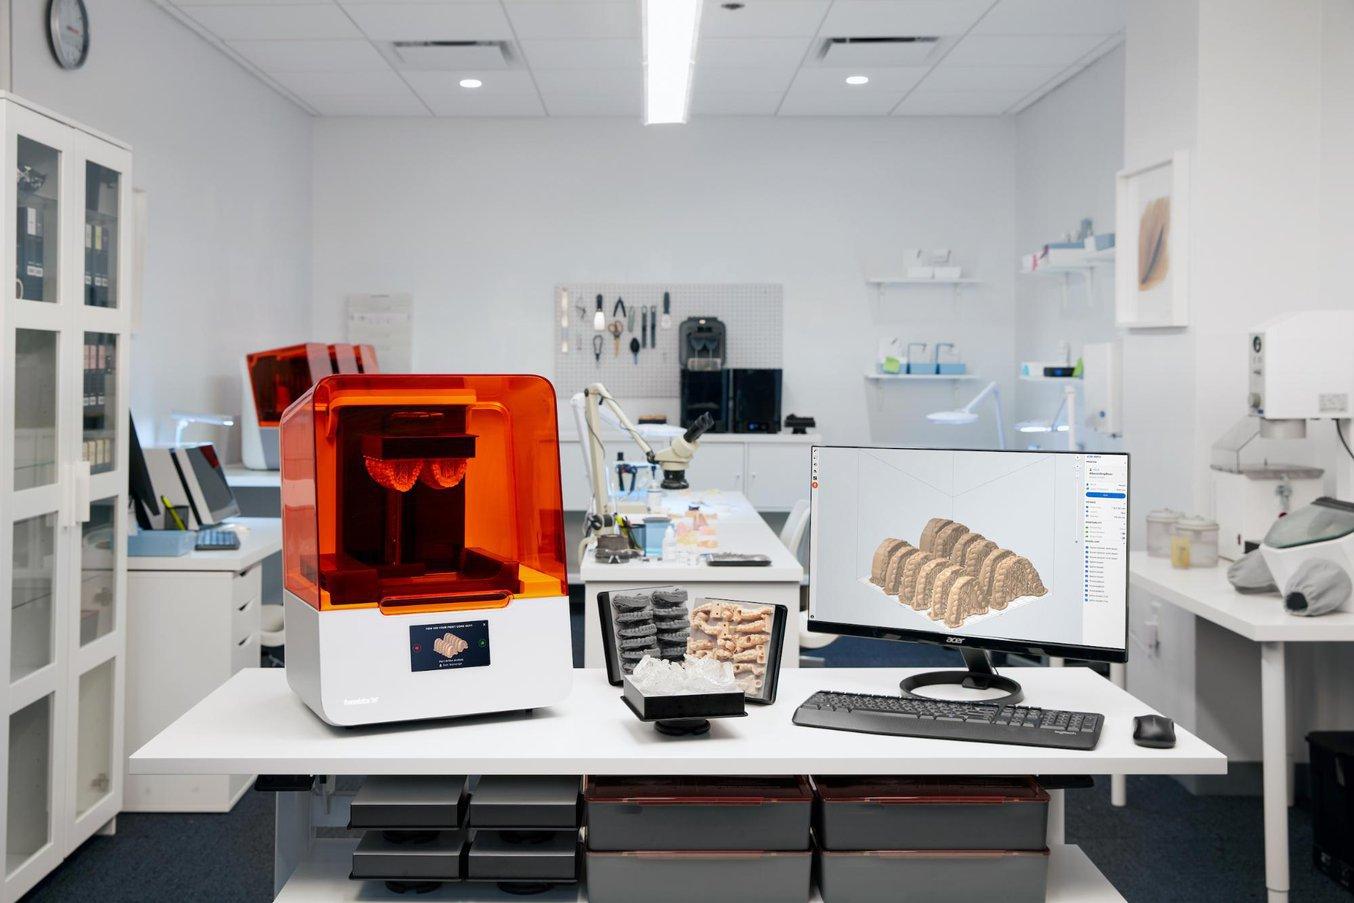 Las impresoras 3D digitales son herramientas muy apreciadas tanto en laboratorios como clínicas dentales para fabricar una gran variedad de aplicaciones de forma rápida y efectiva.